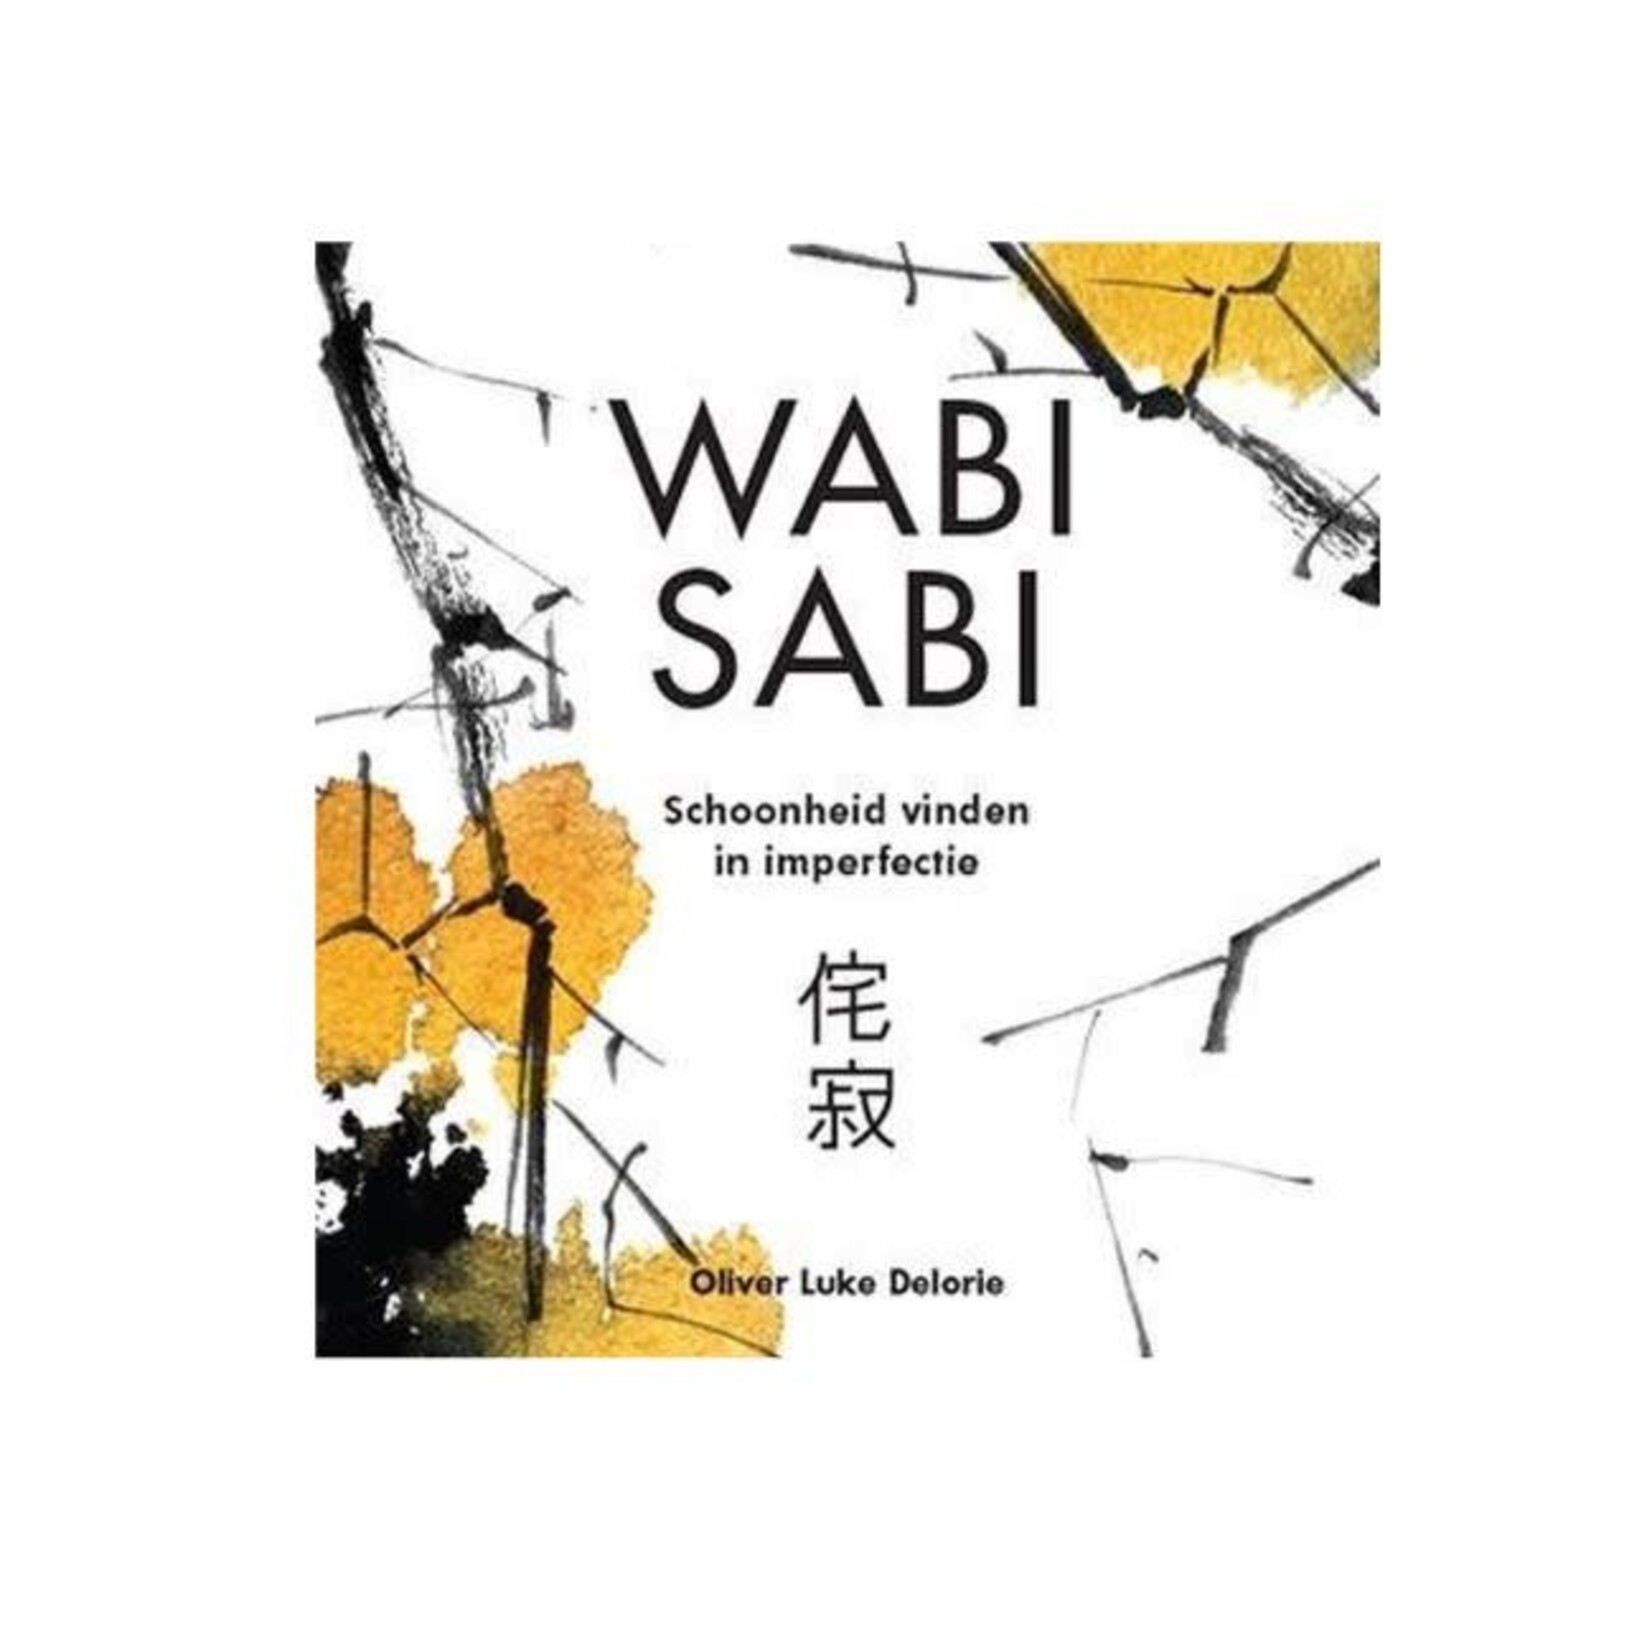 Lantaarn Uitgeverij Wabi sabi